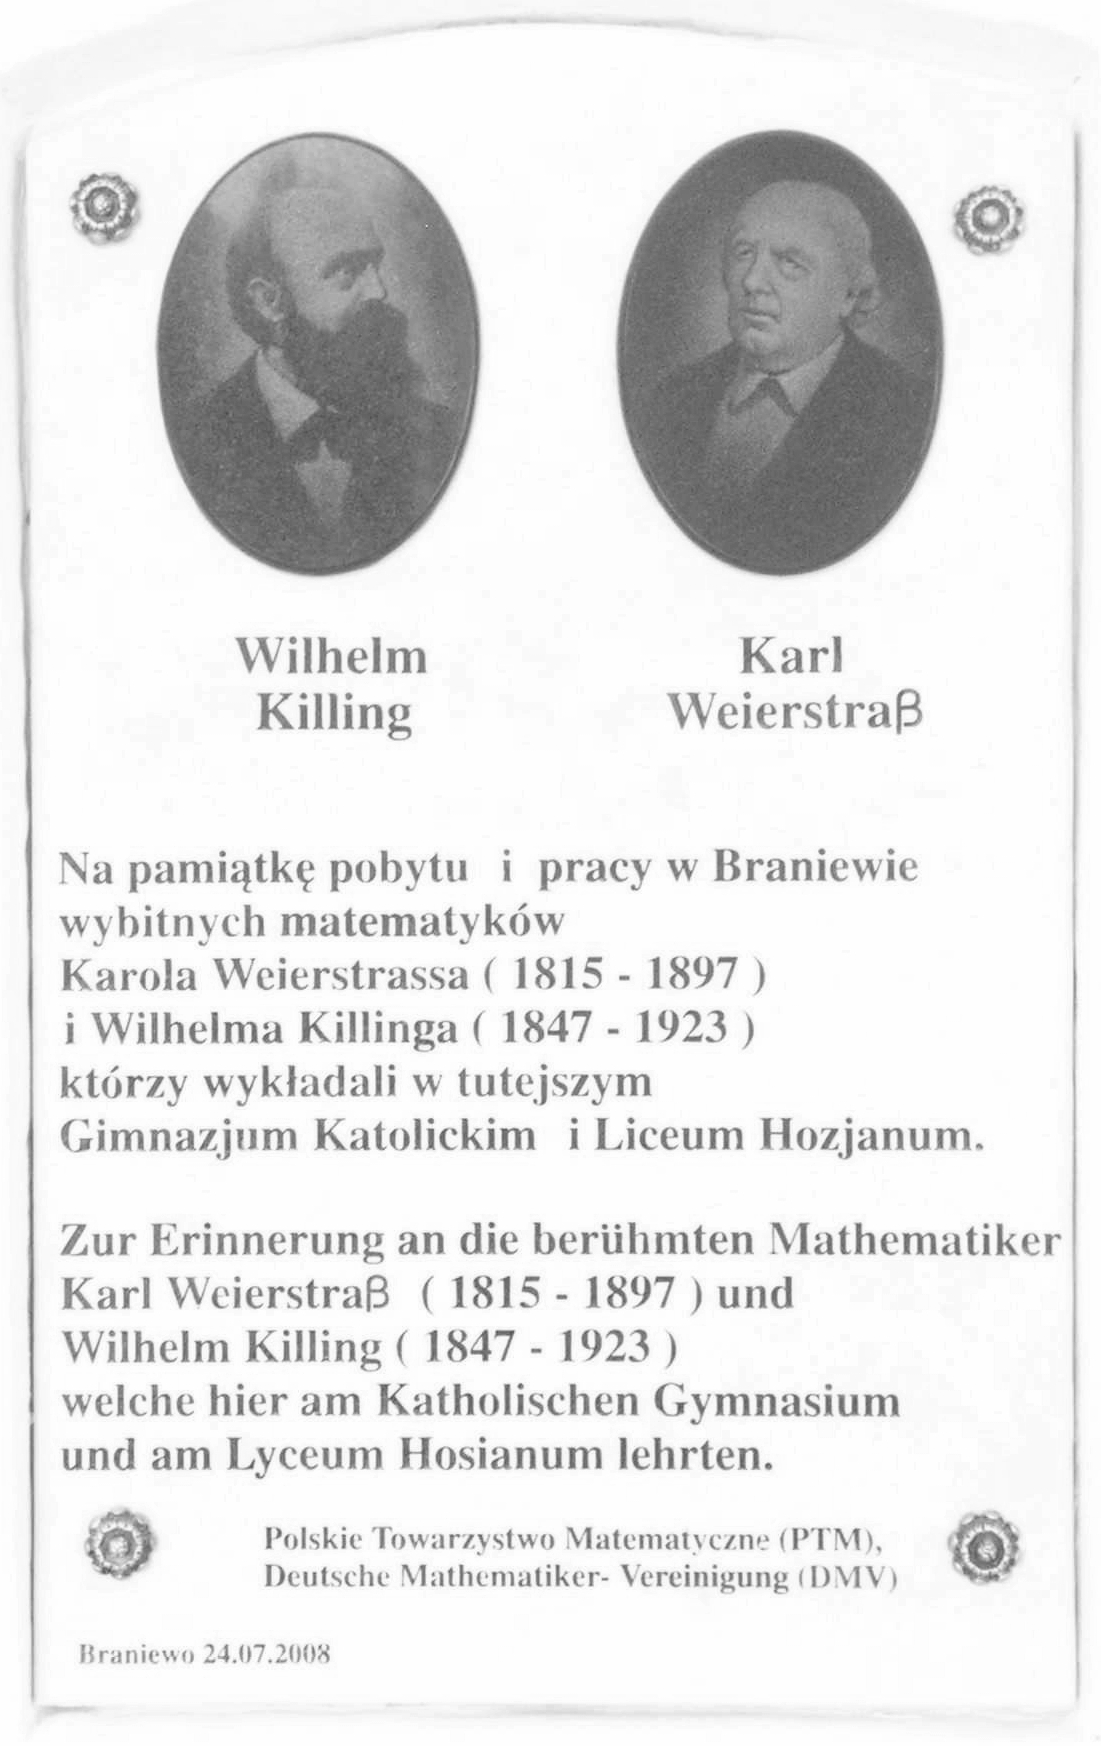 Killing-Weierstrass Memorial Plate